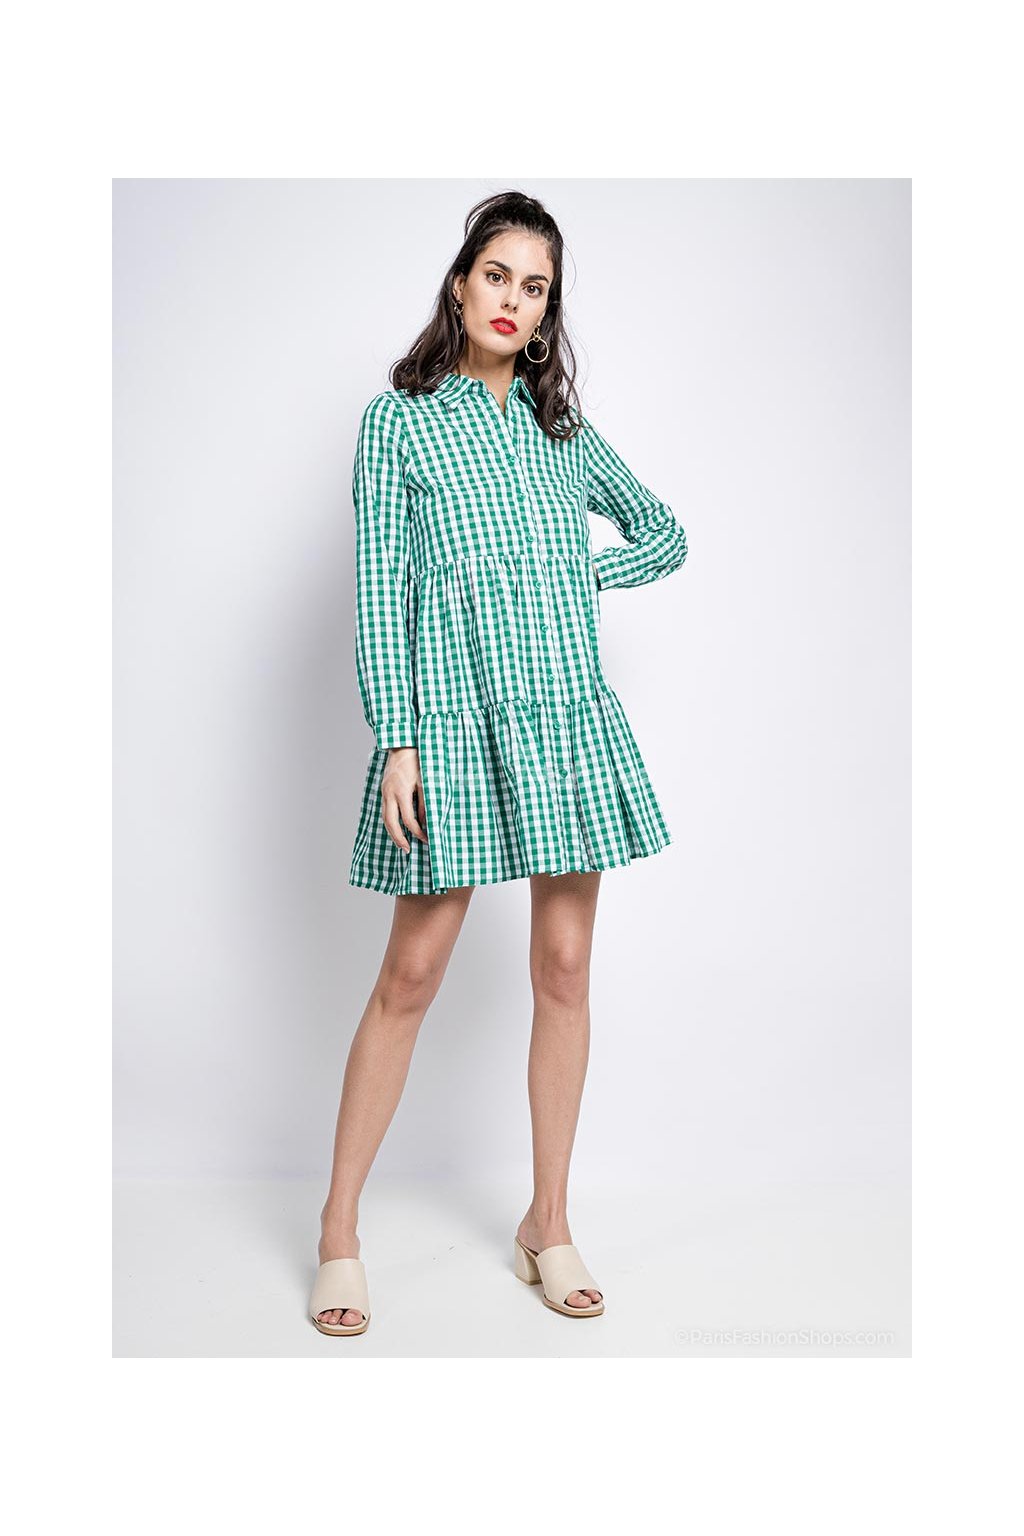 Kockované zelené šaty Pianna - Keira Fashion